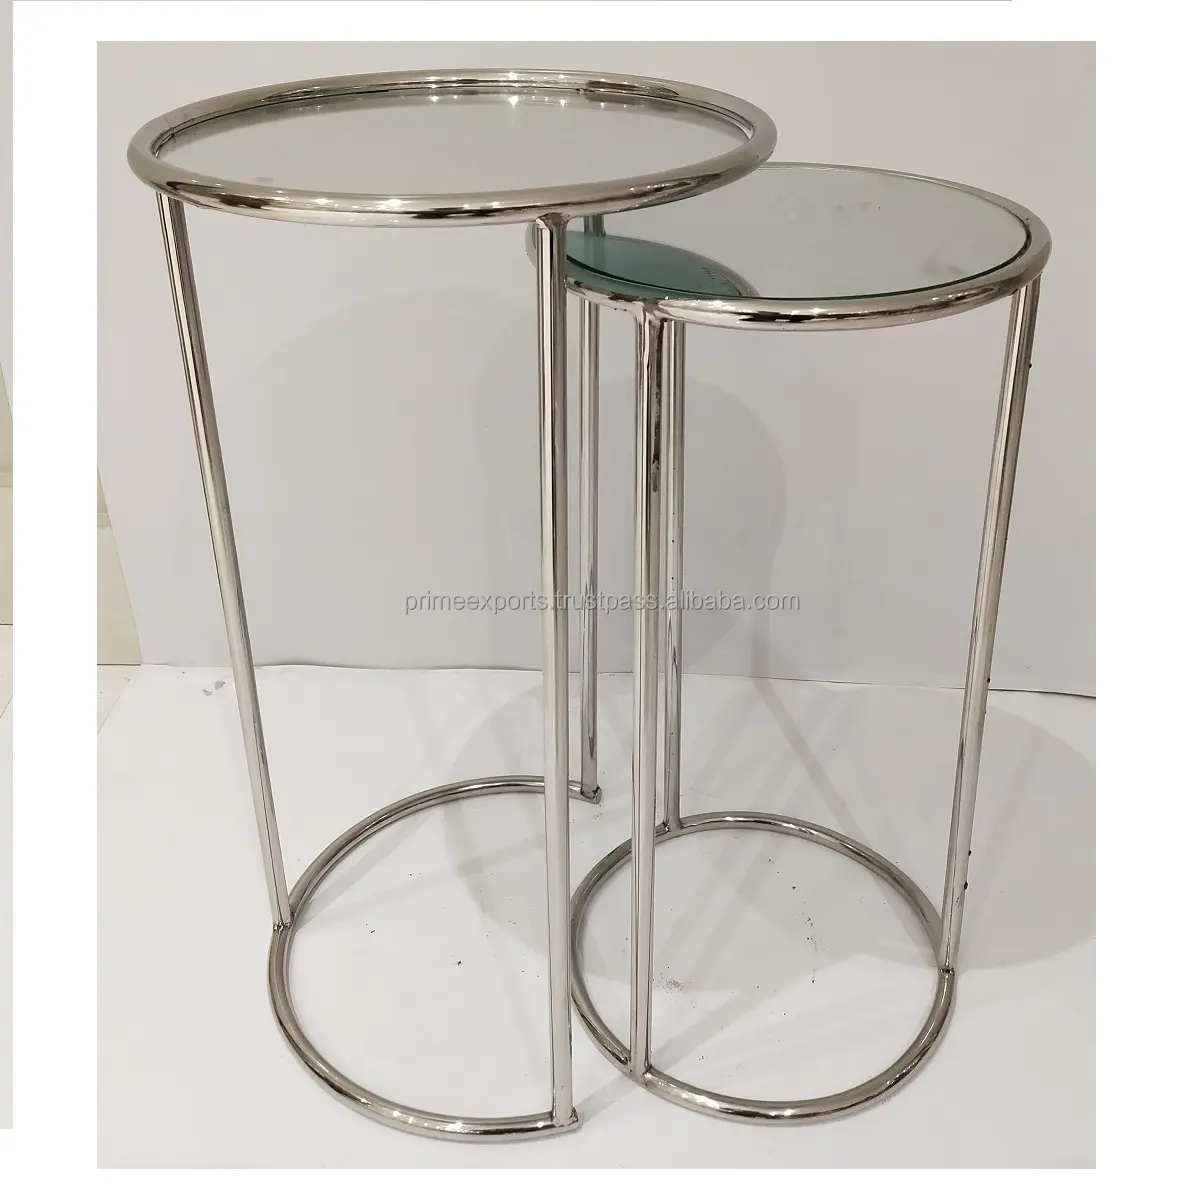 Meuble de maison avec pieds en métal, miroir rond, tabouret latéral, Table de luxe classique, pied en verre trempé